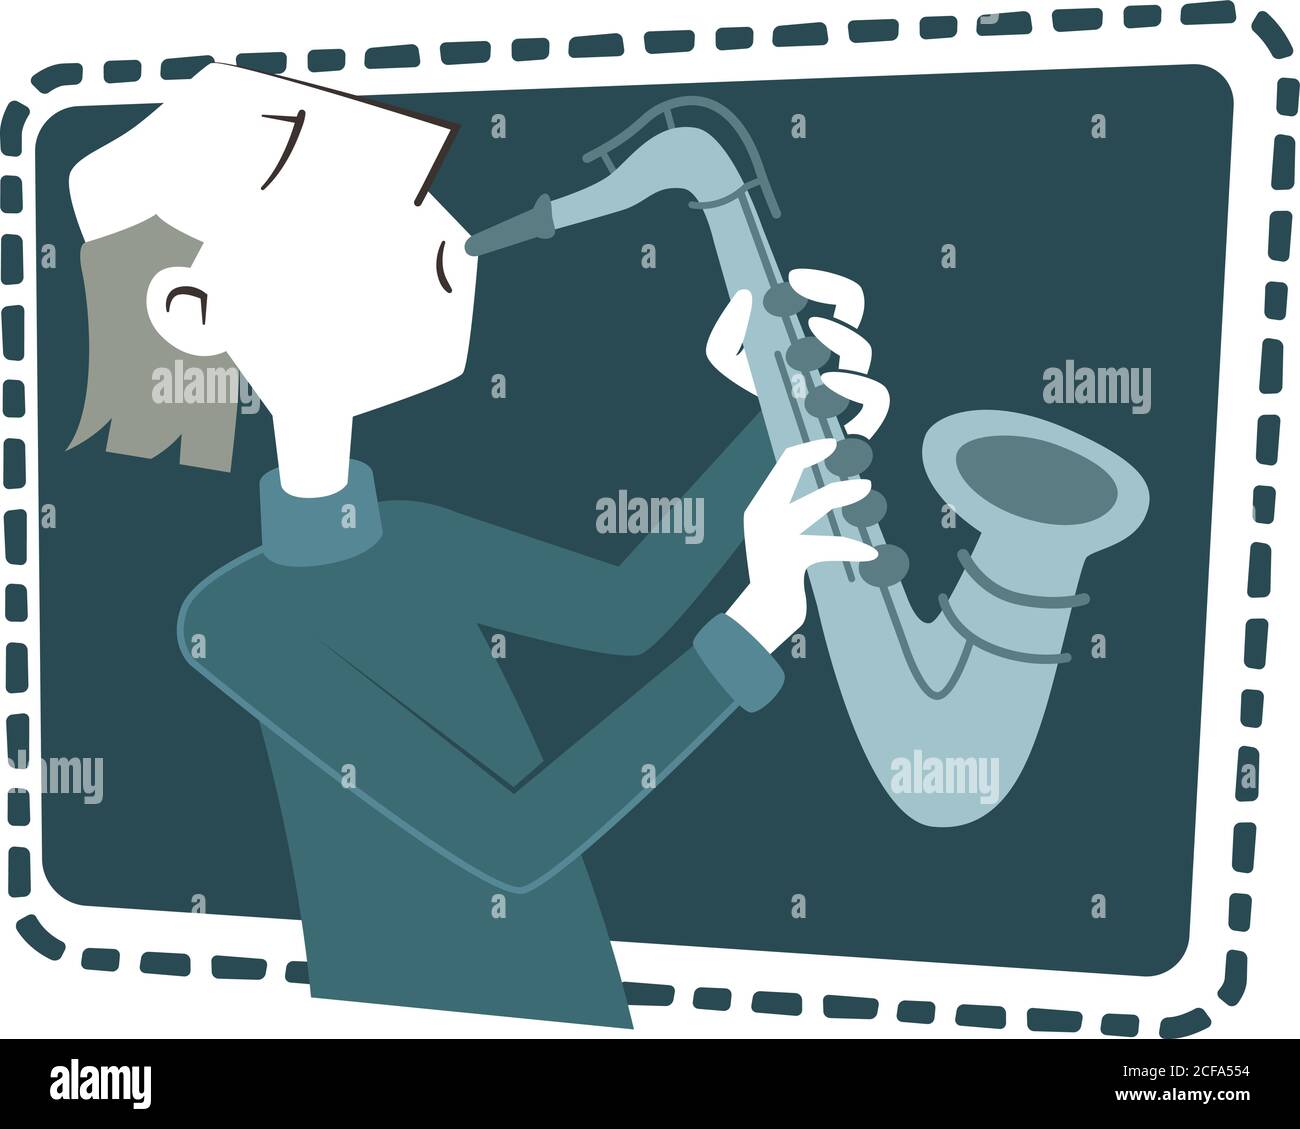 Illustration de style rétro d'un homme jouant le saxophone. Illustration de Vecteur